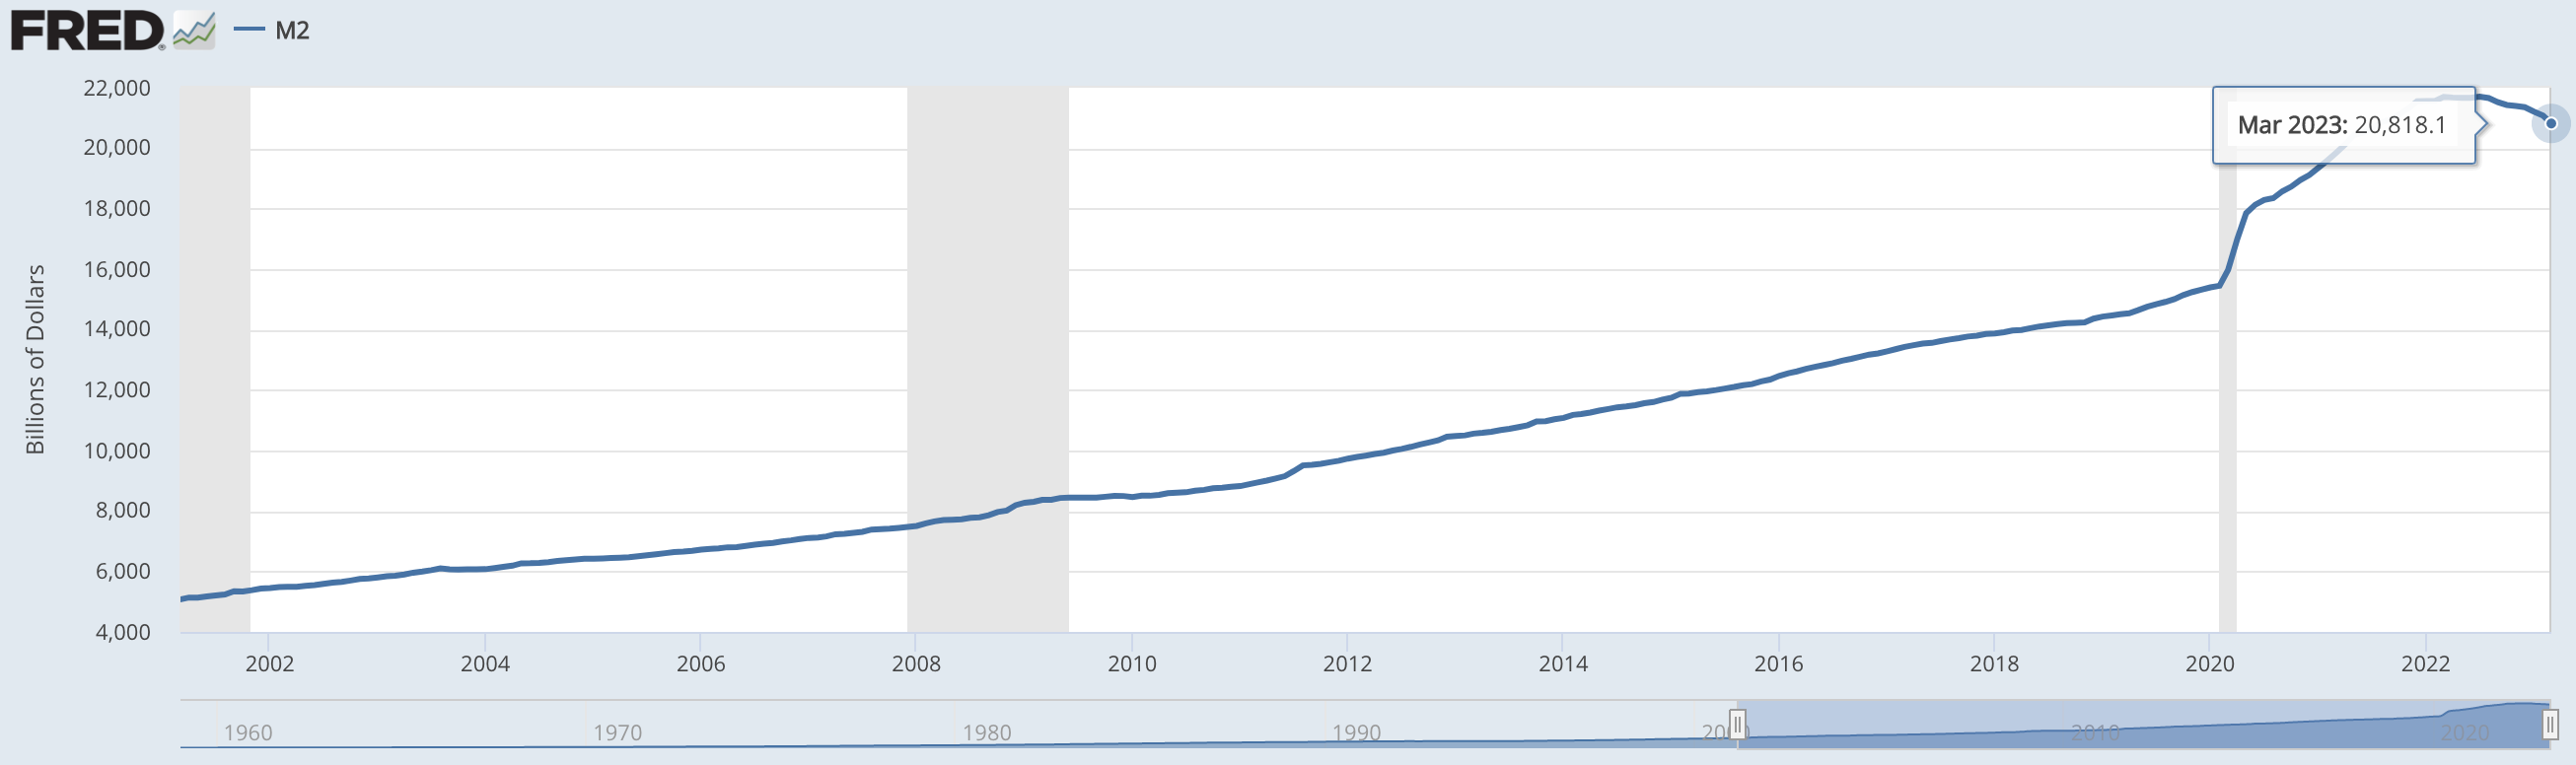 Cung tiền M2 của Mỹ đang giảm với tốc độ chưa từng thấy, nó có ý nghĩa gì với lạm phát, với FED, và với nền kinh tế?